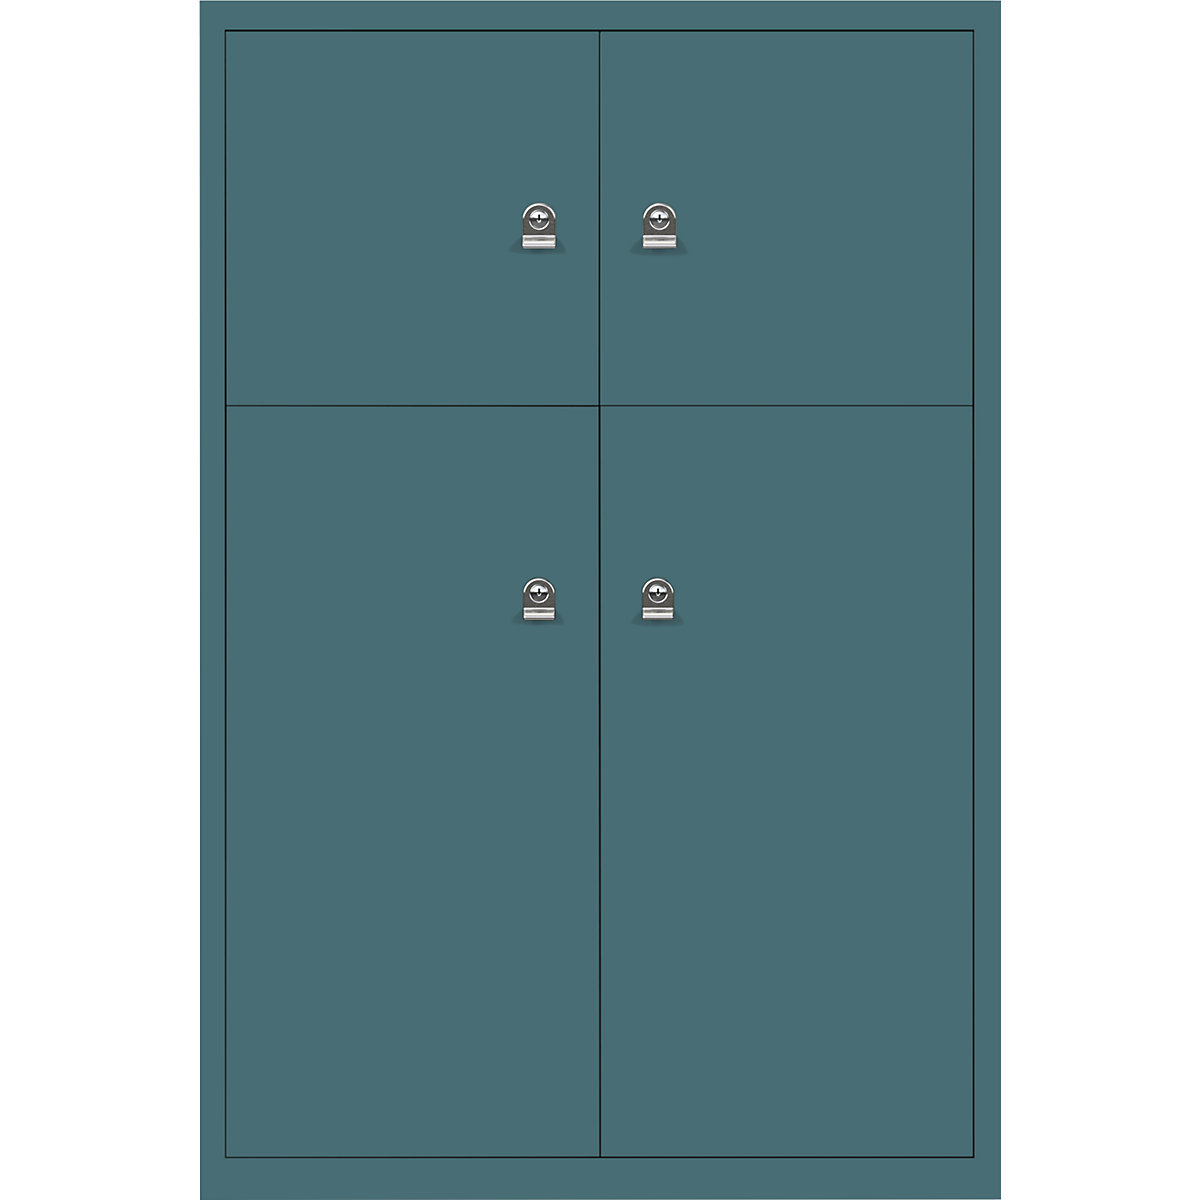 Omara s predelki z zaklepanjem LateralFile™ – BISLEY, 4 predelki z zaklepanjem, višina 2 x 375 mm, 2 x 755 mm, modro zelene barve-22